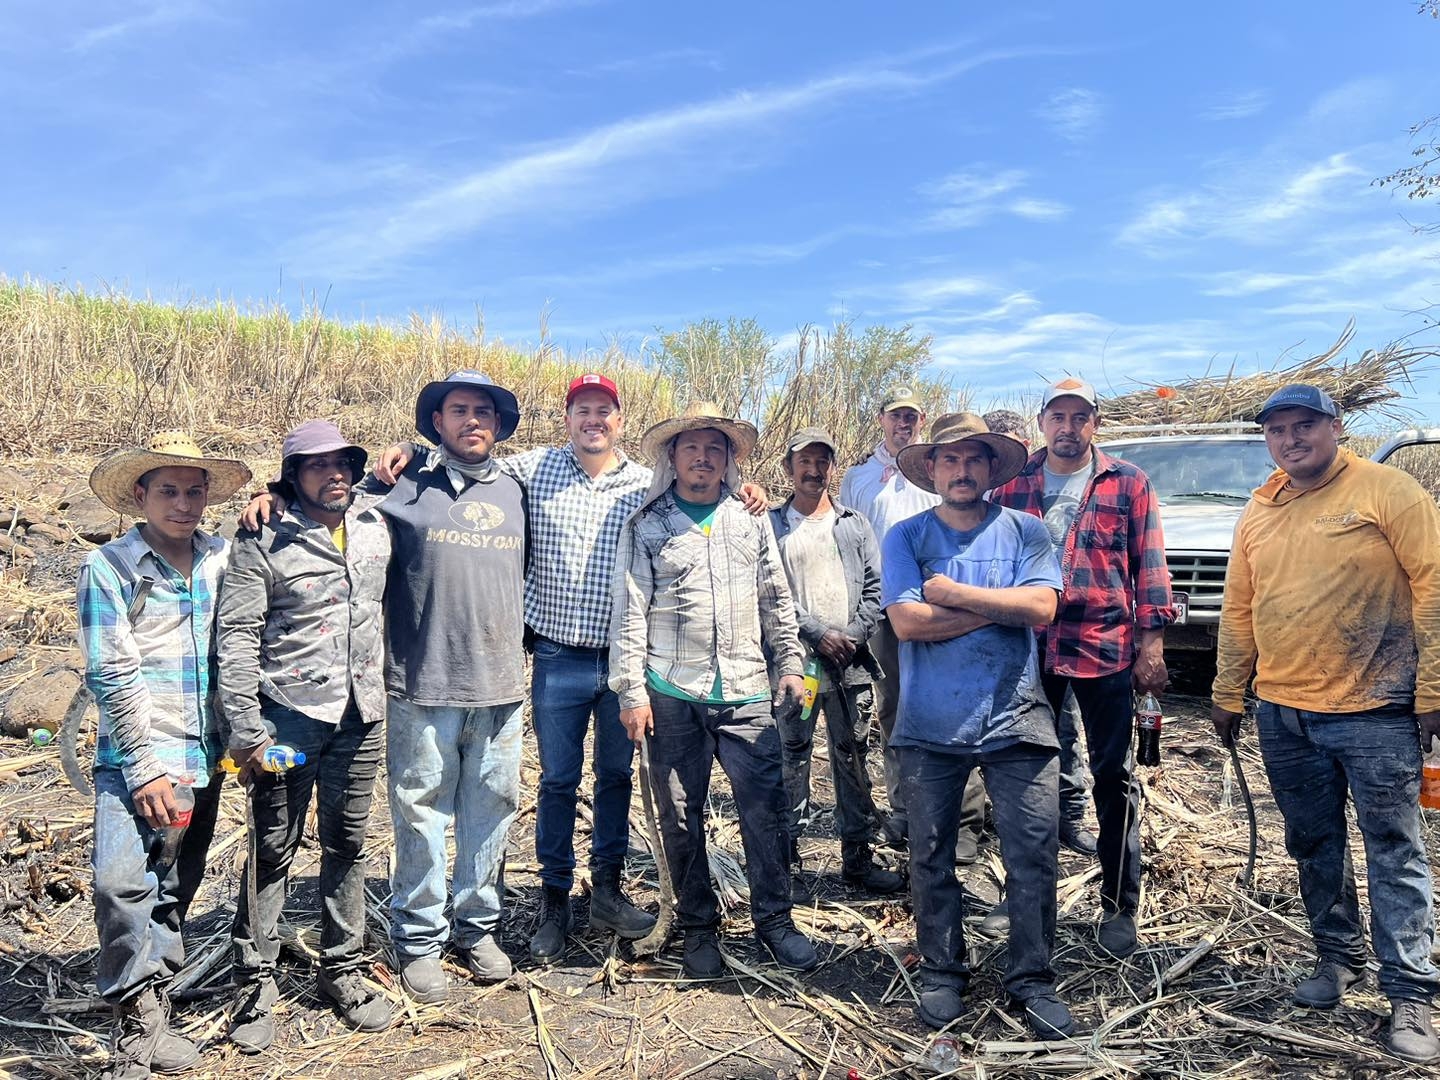 Producción de caña ha sido abandonada por las autoridades en Taretan, Michoacán: Diego Álvarez Tafolla